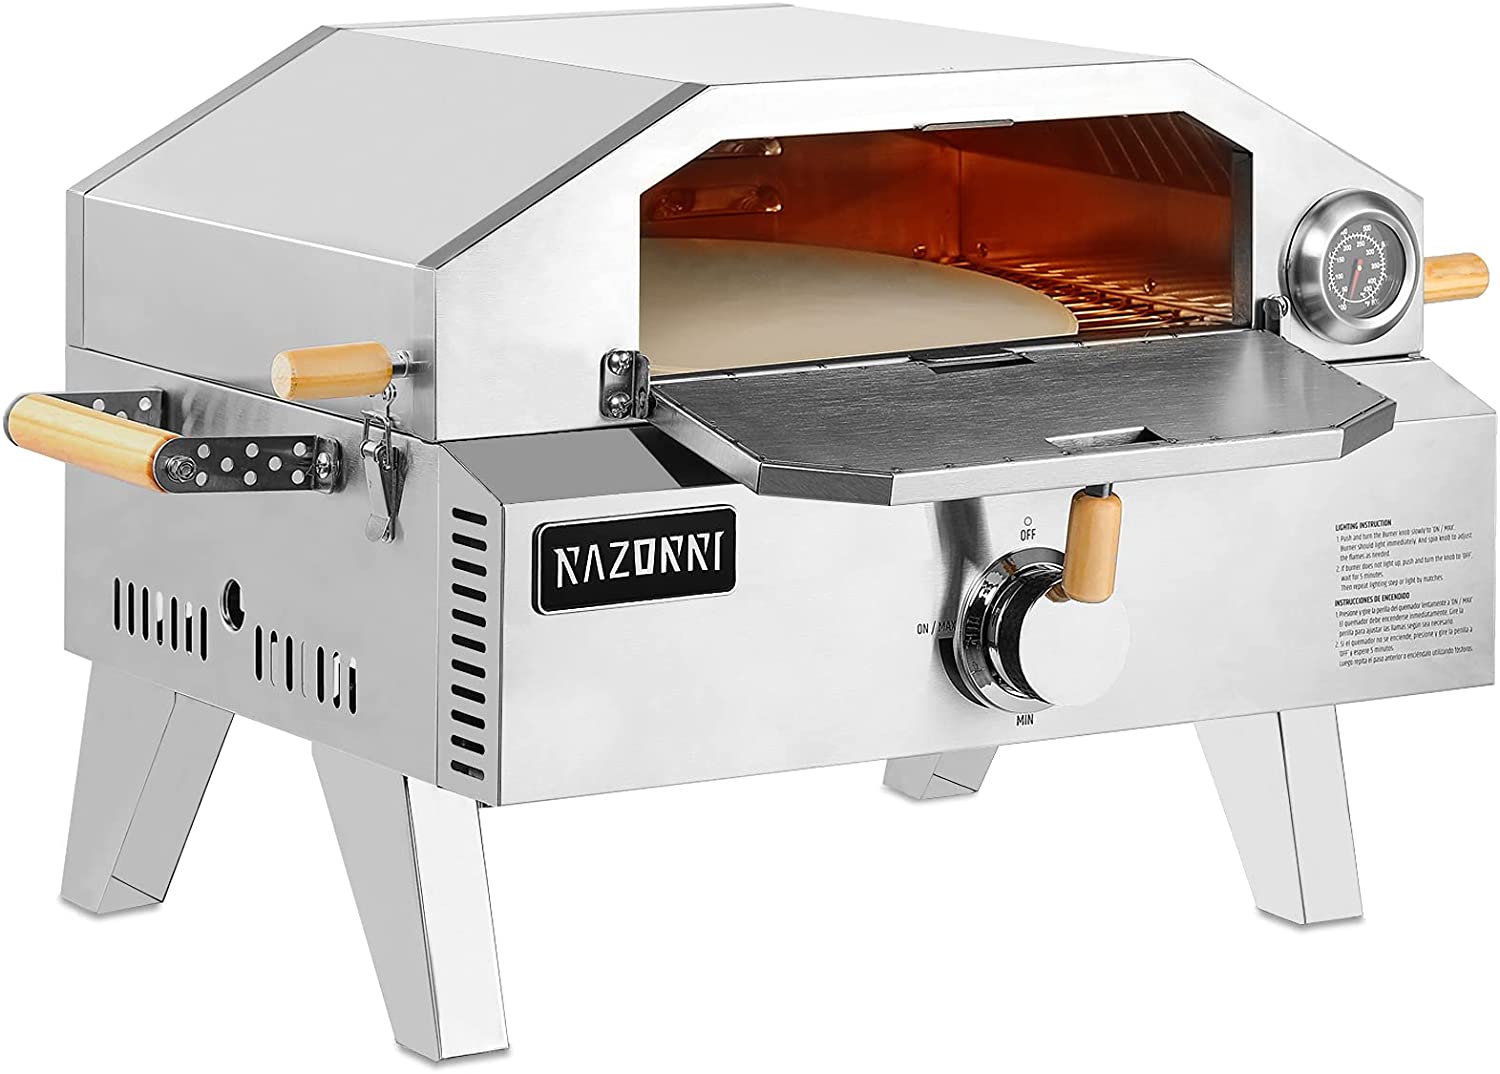 Razorri Comodo Gas Pizza Oven - 2-in-1 Portable Griller